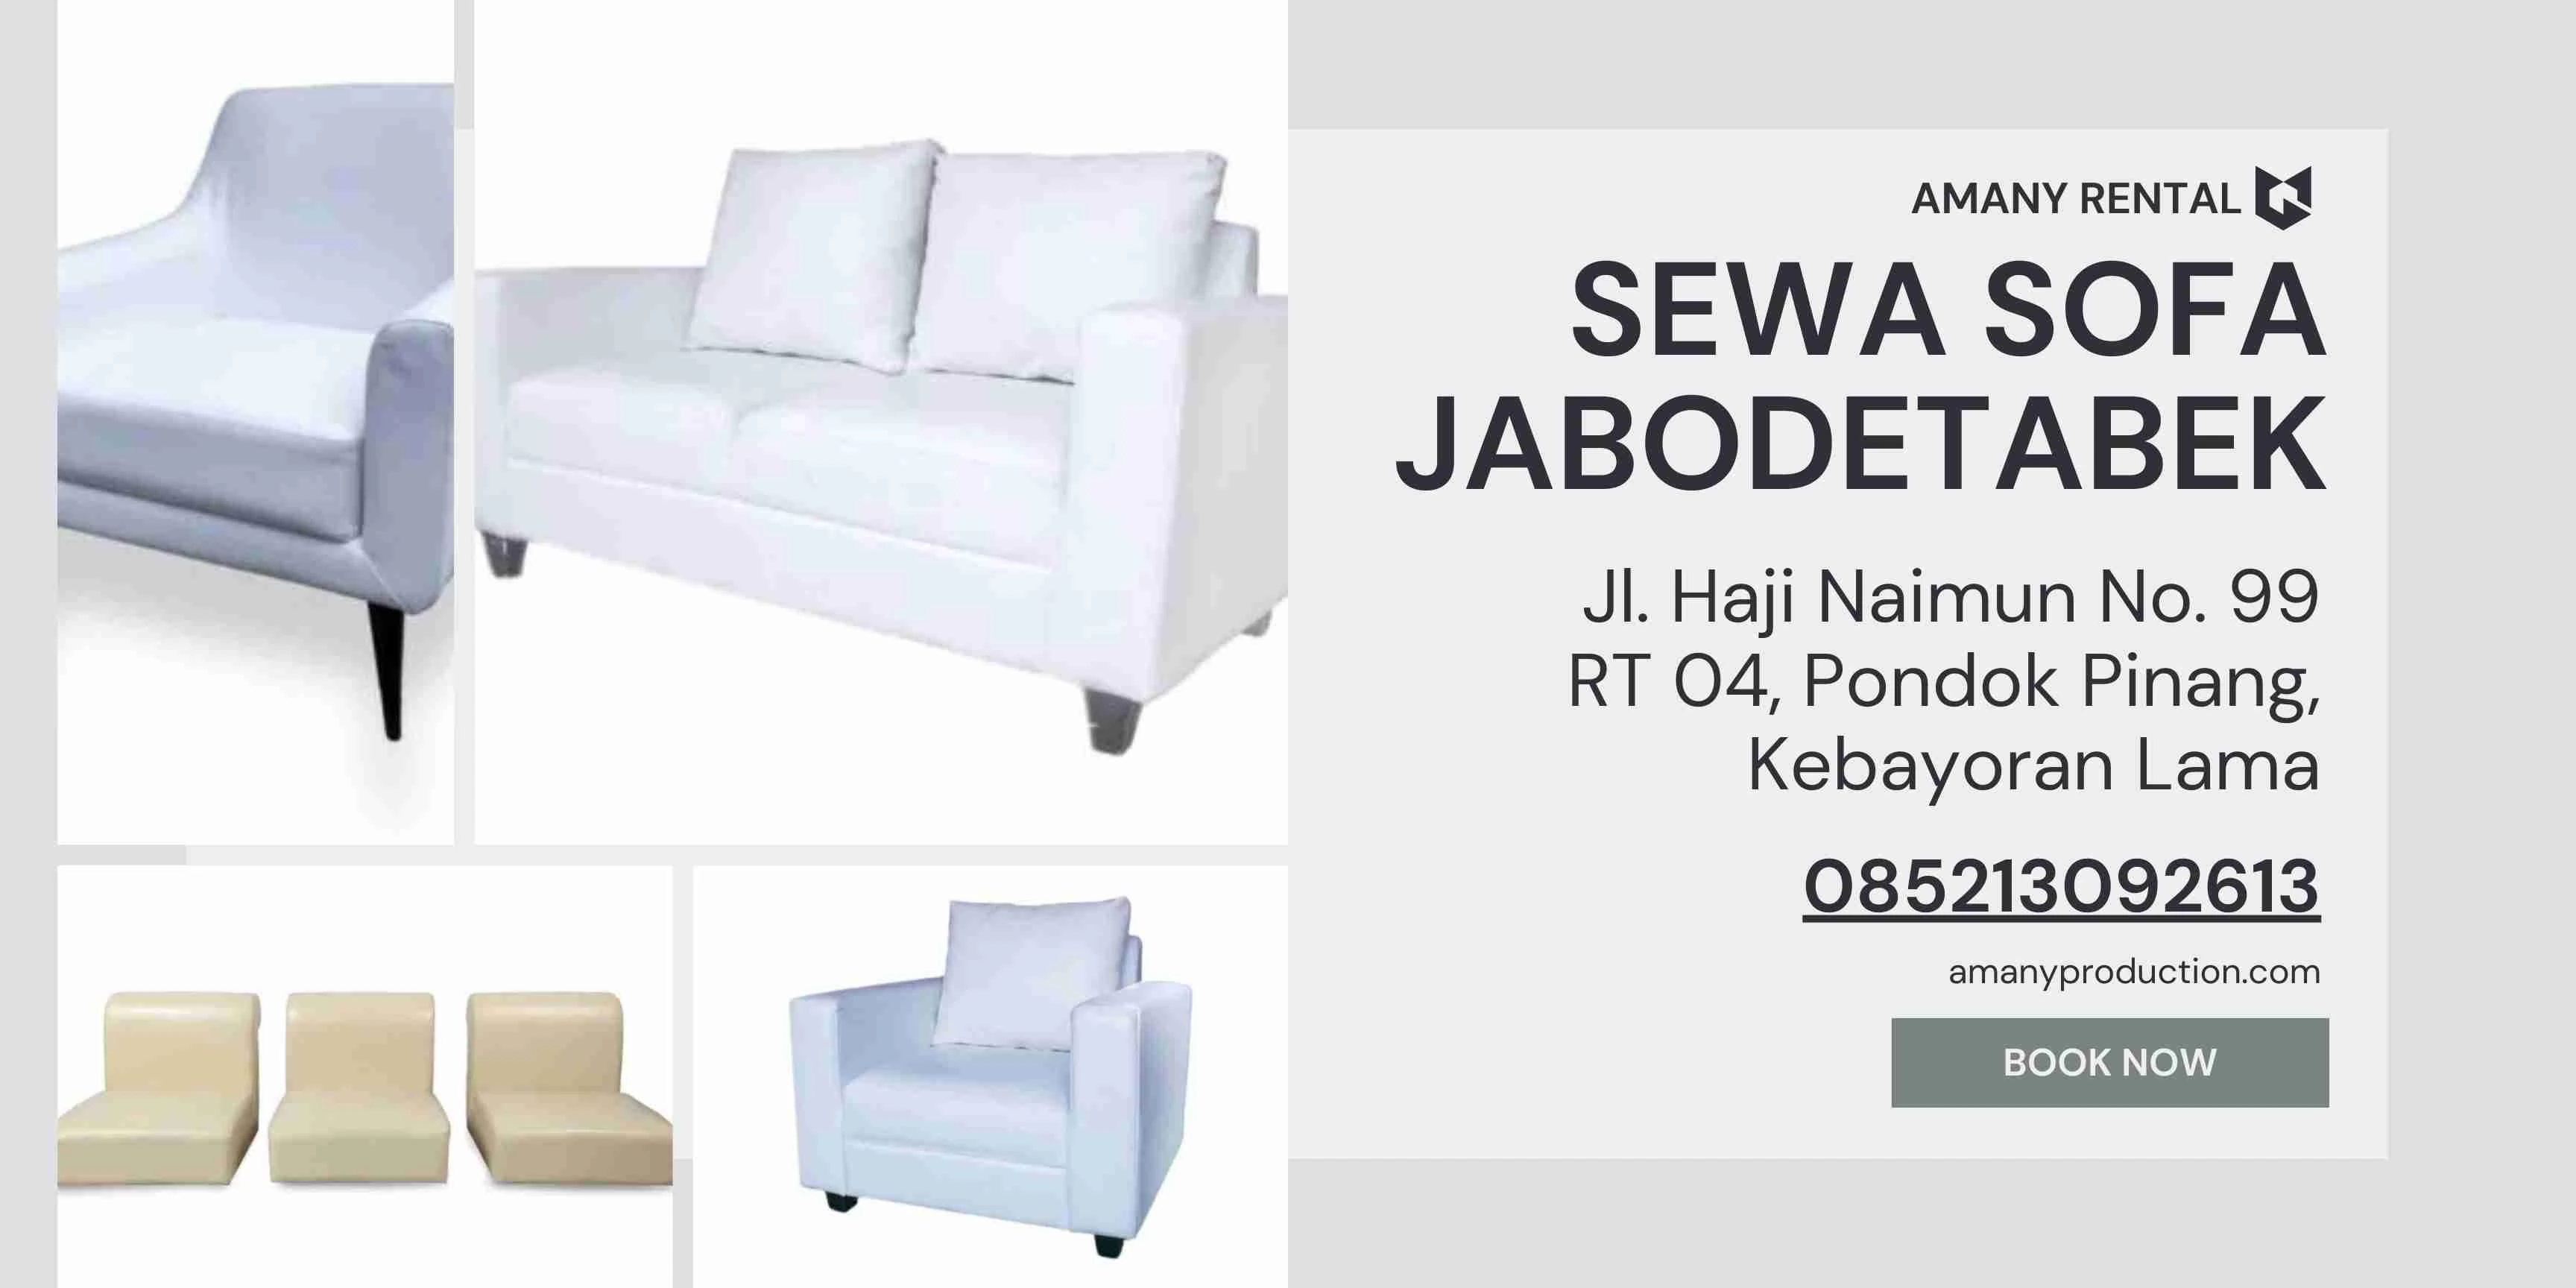 Jakarta Sofa Rental